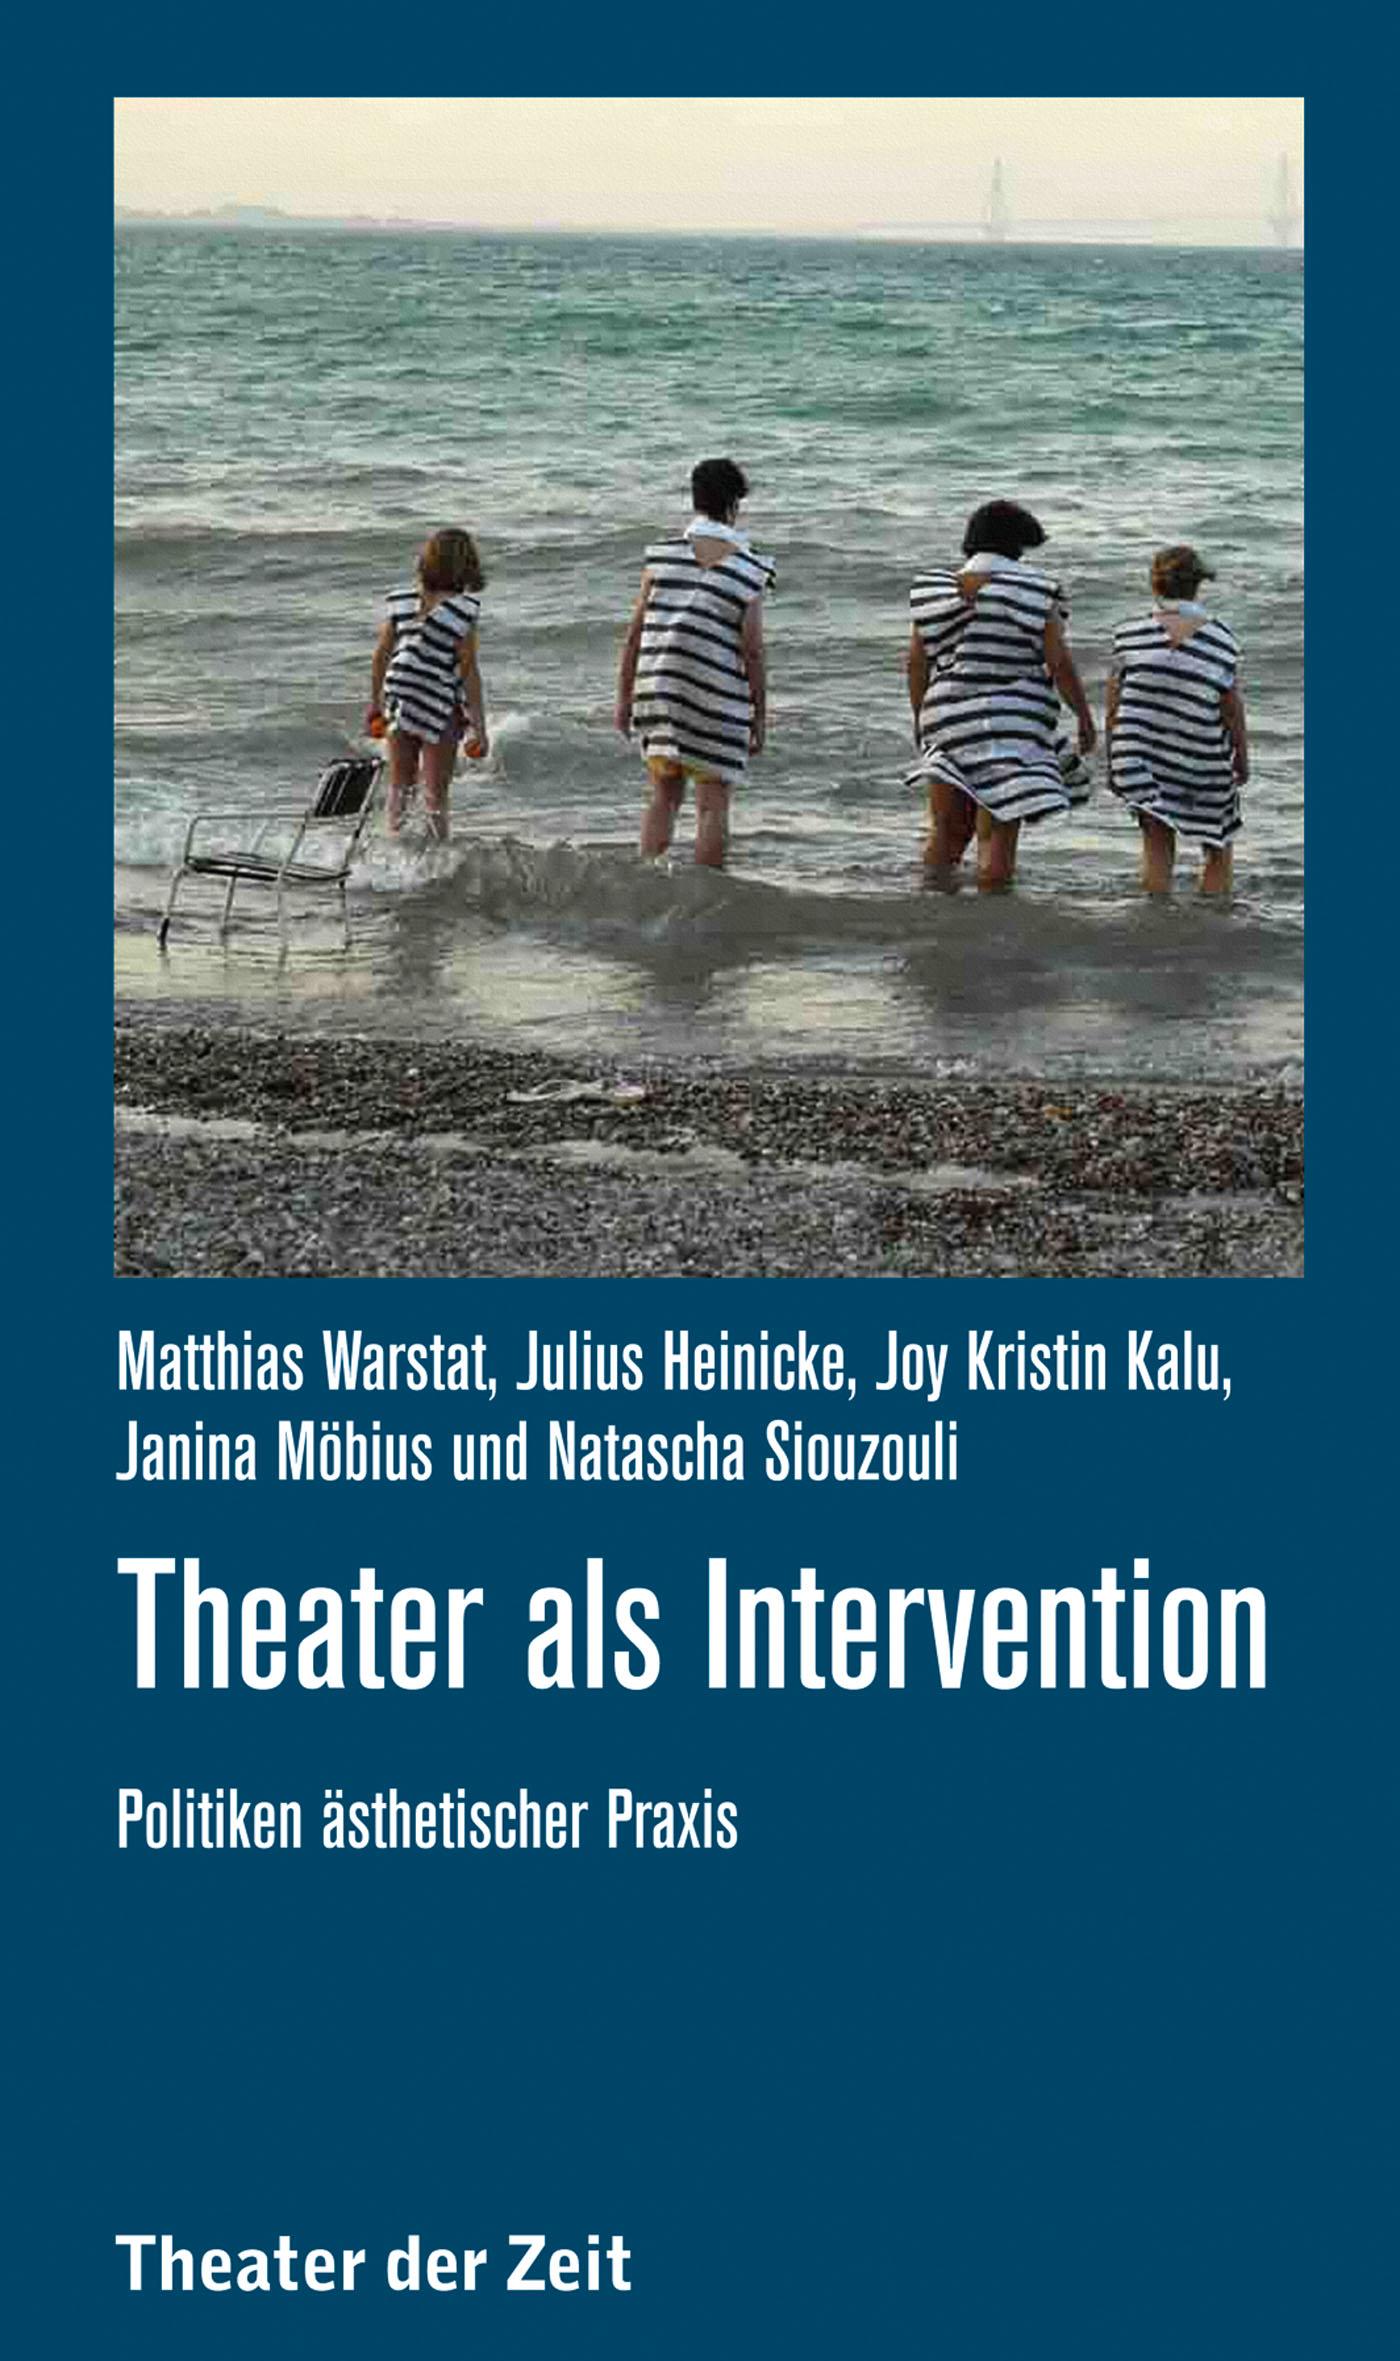 Recherchen 121 "Theater als Intervention"